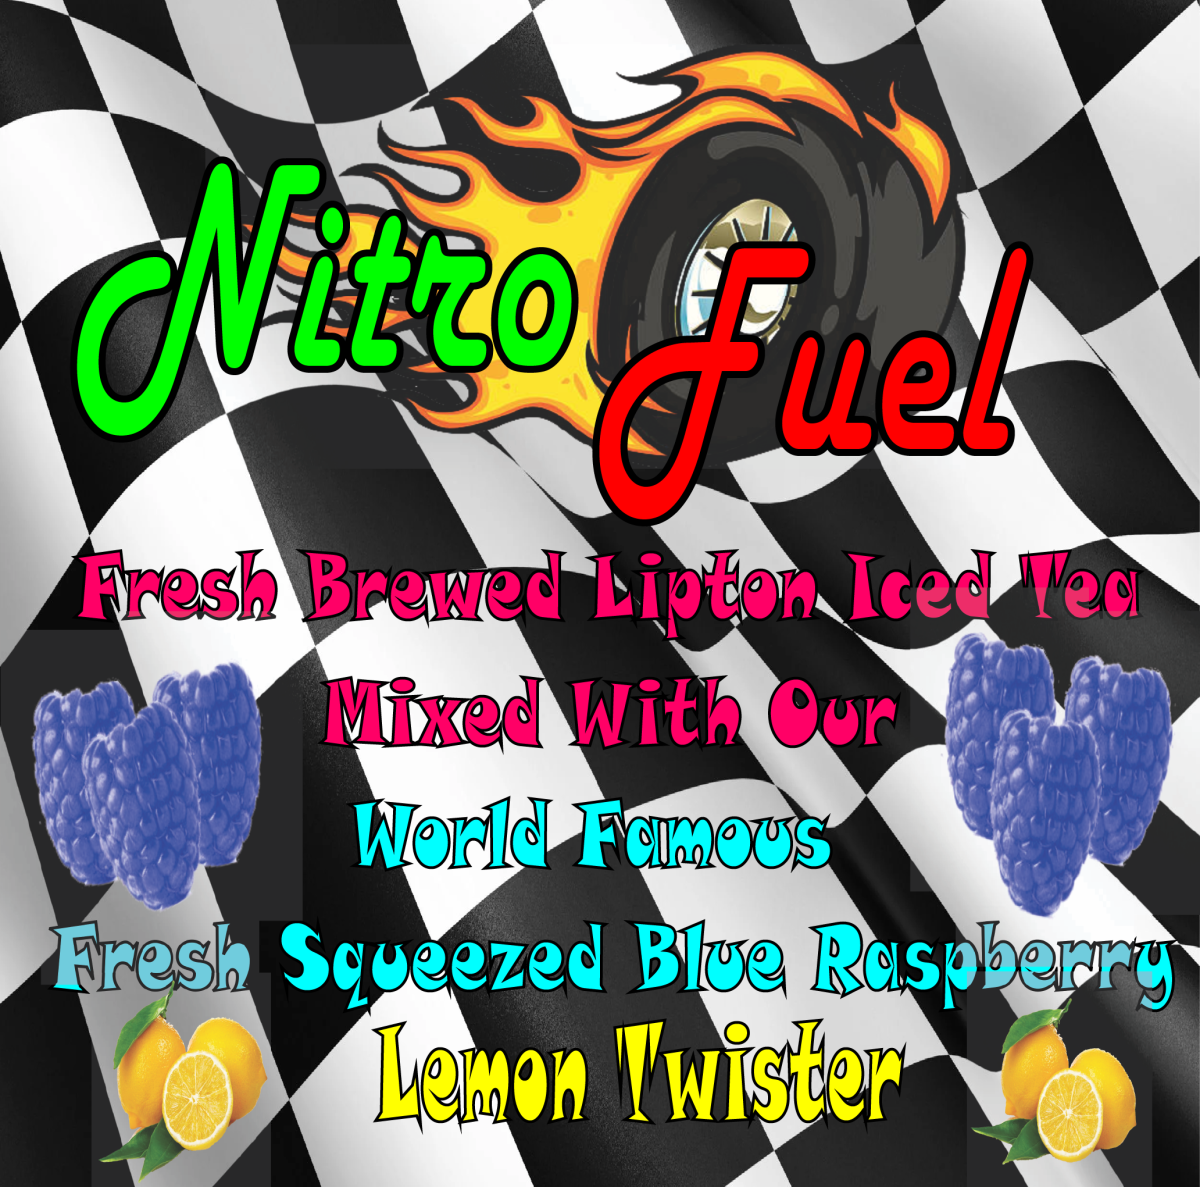 Nitro fuel Pork